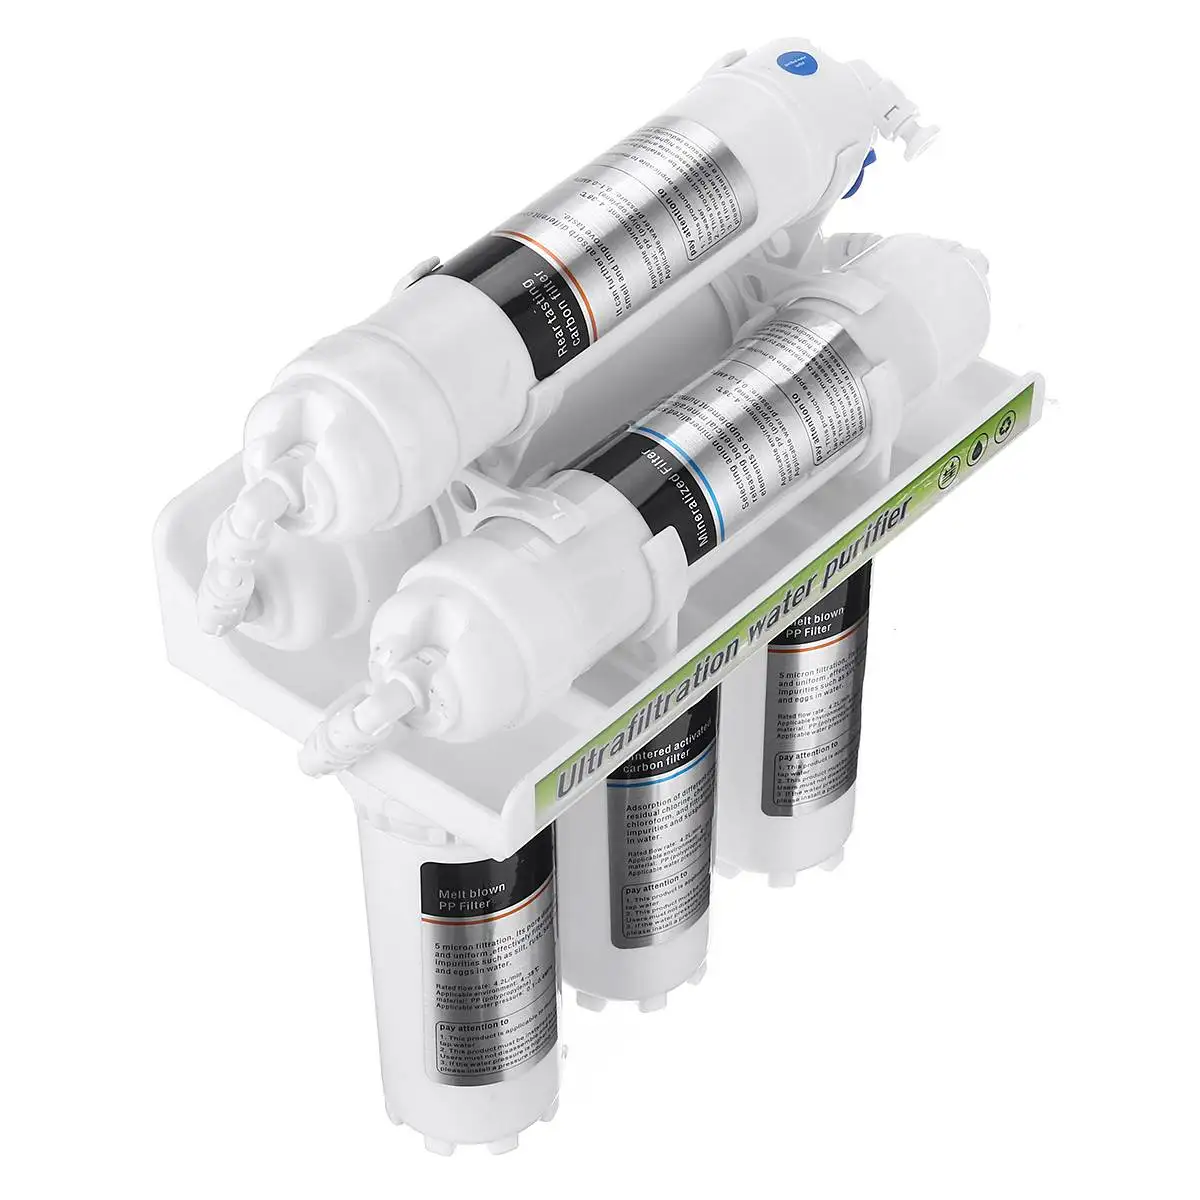 6 Fazi Ultrafiltration Vodo, Čistilec Sistem Za Domači Kuhinji Pipo Čistilec Pitne Vode, Filtracija Gospodinjski Ultras Filtracija